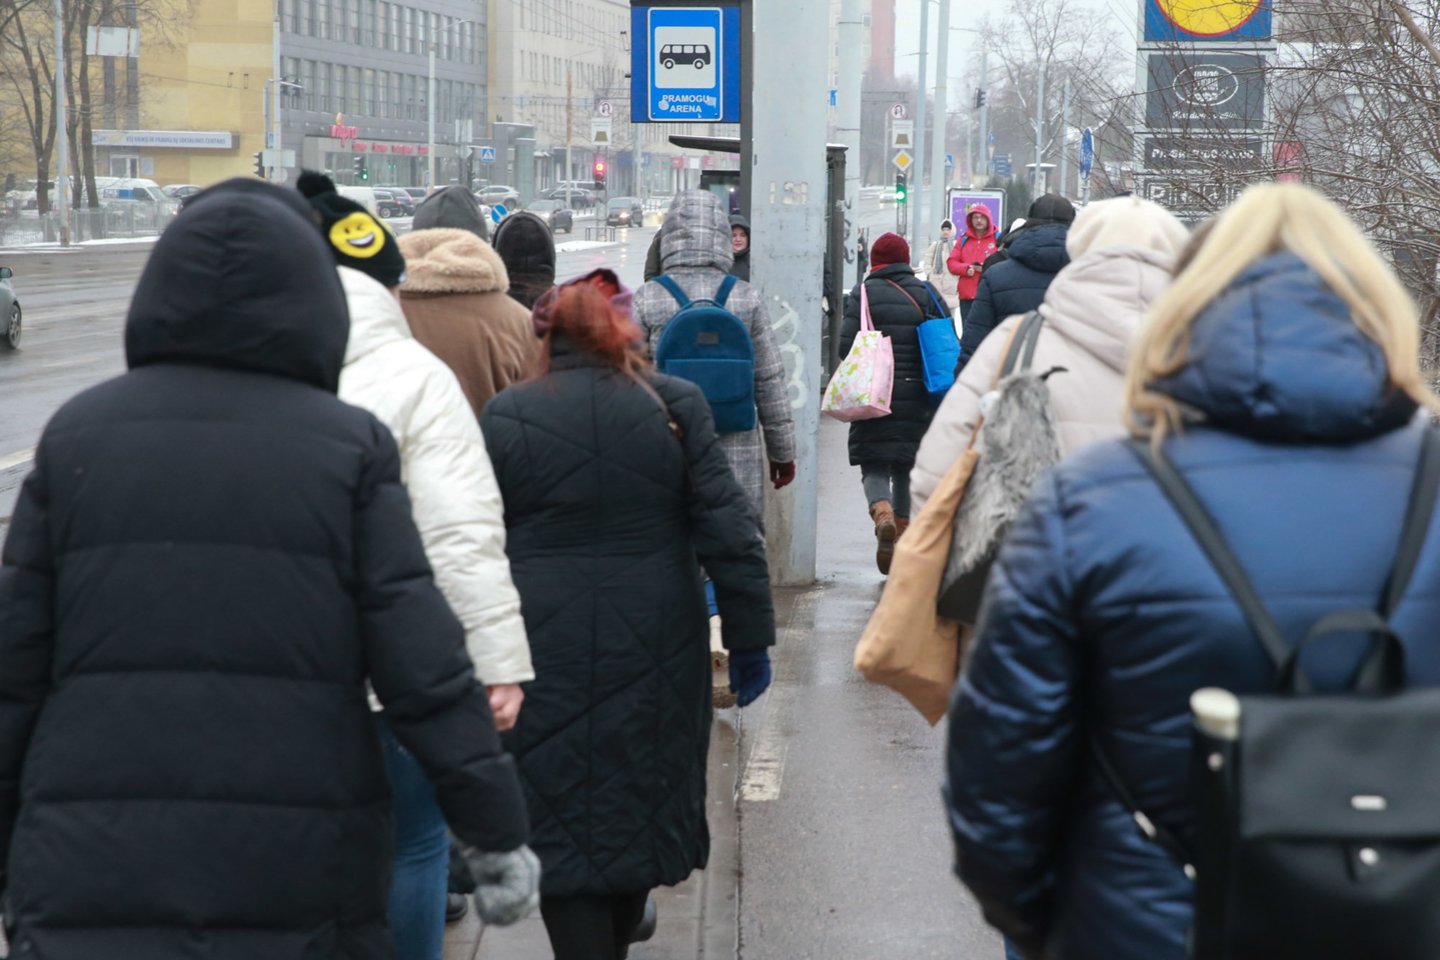 Šimtai sostinės viešojo transporto darbuotojų užuot sėdę prie autobuso ar troleibuso vairo, pasirinko streikuoti.<br>R.Danisevičiaus nuotr.